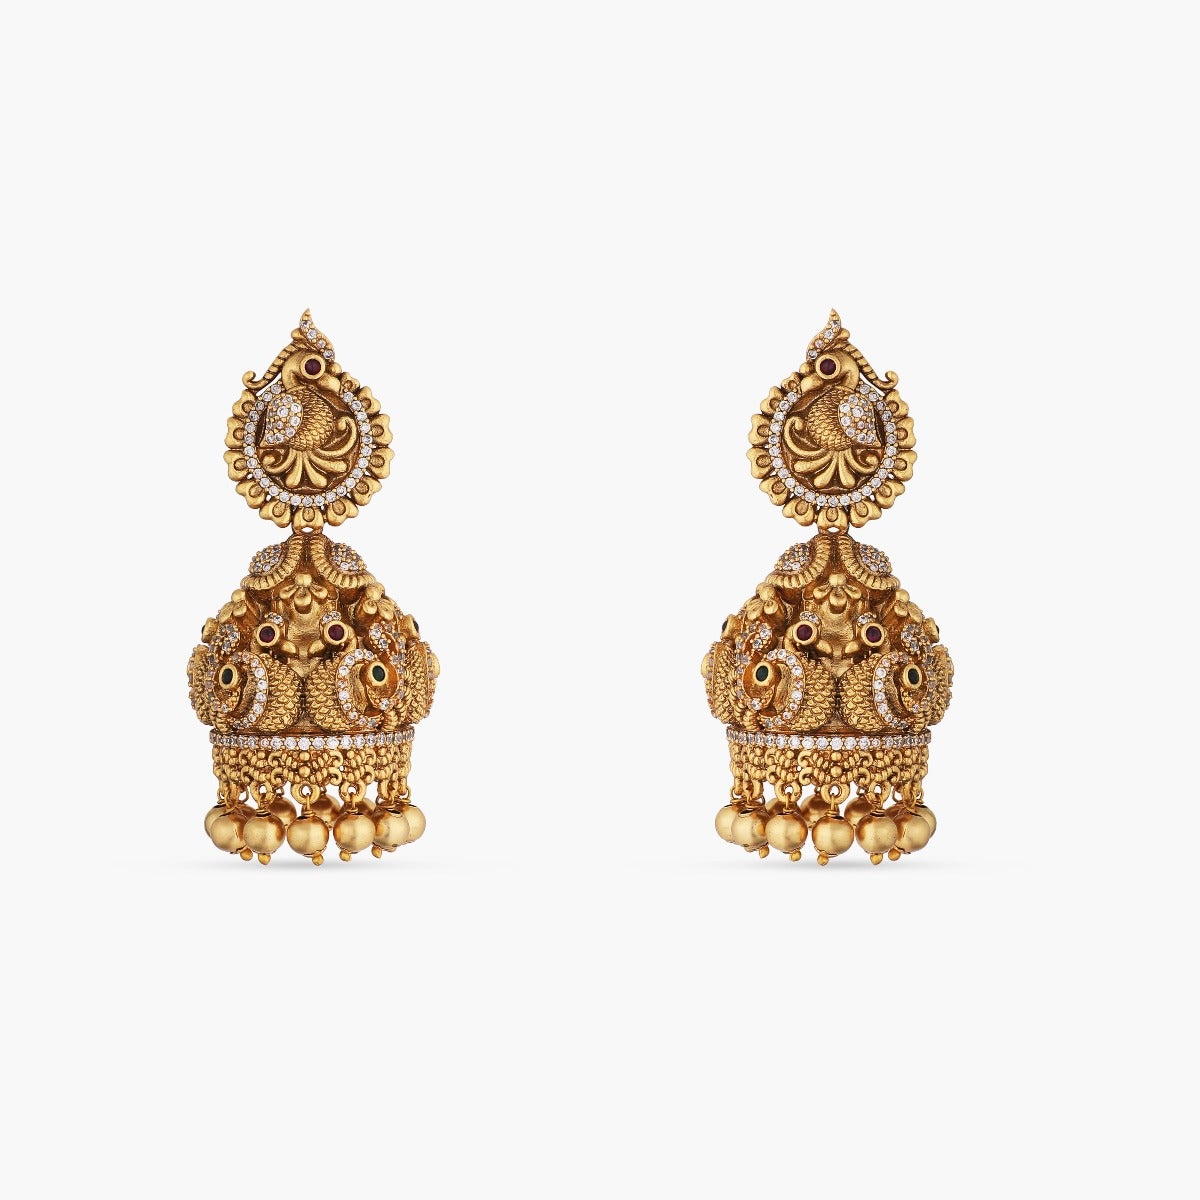 Pekham Antique Jhumka Earrings